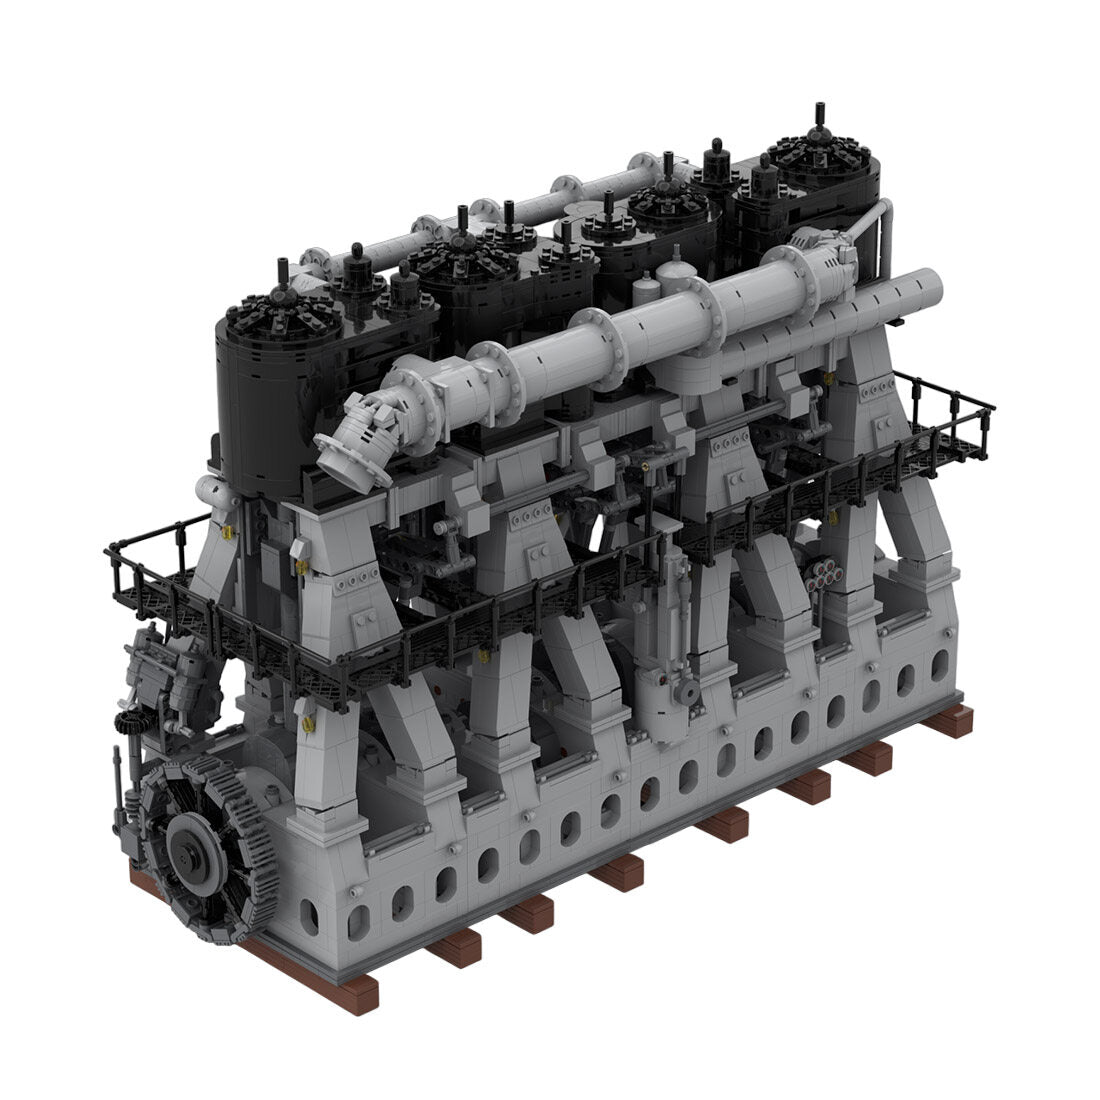 TECHING V8 Modelo de motor 500+piezas 1:3 V8 Metal en forma de V para  coche, experimento de ciencia mecánica, modelo de motor de física, regalo  para